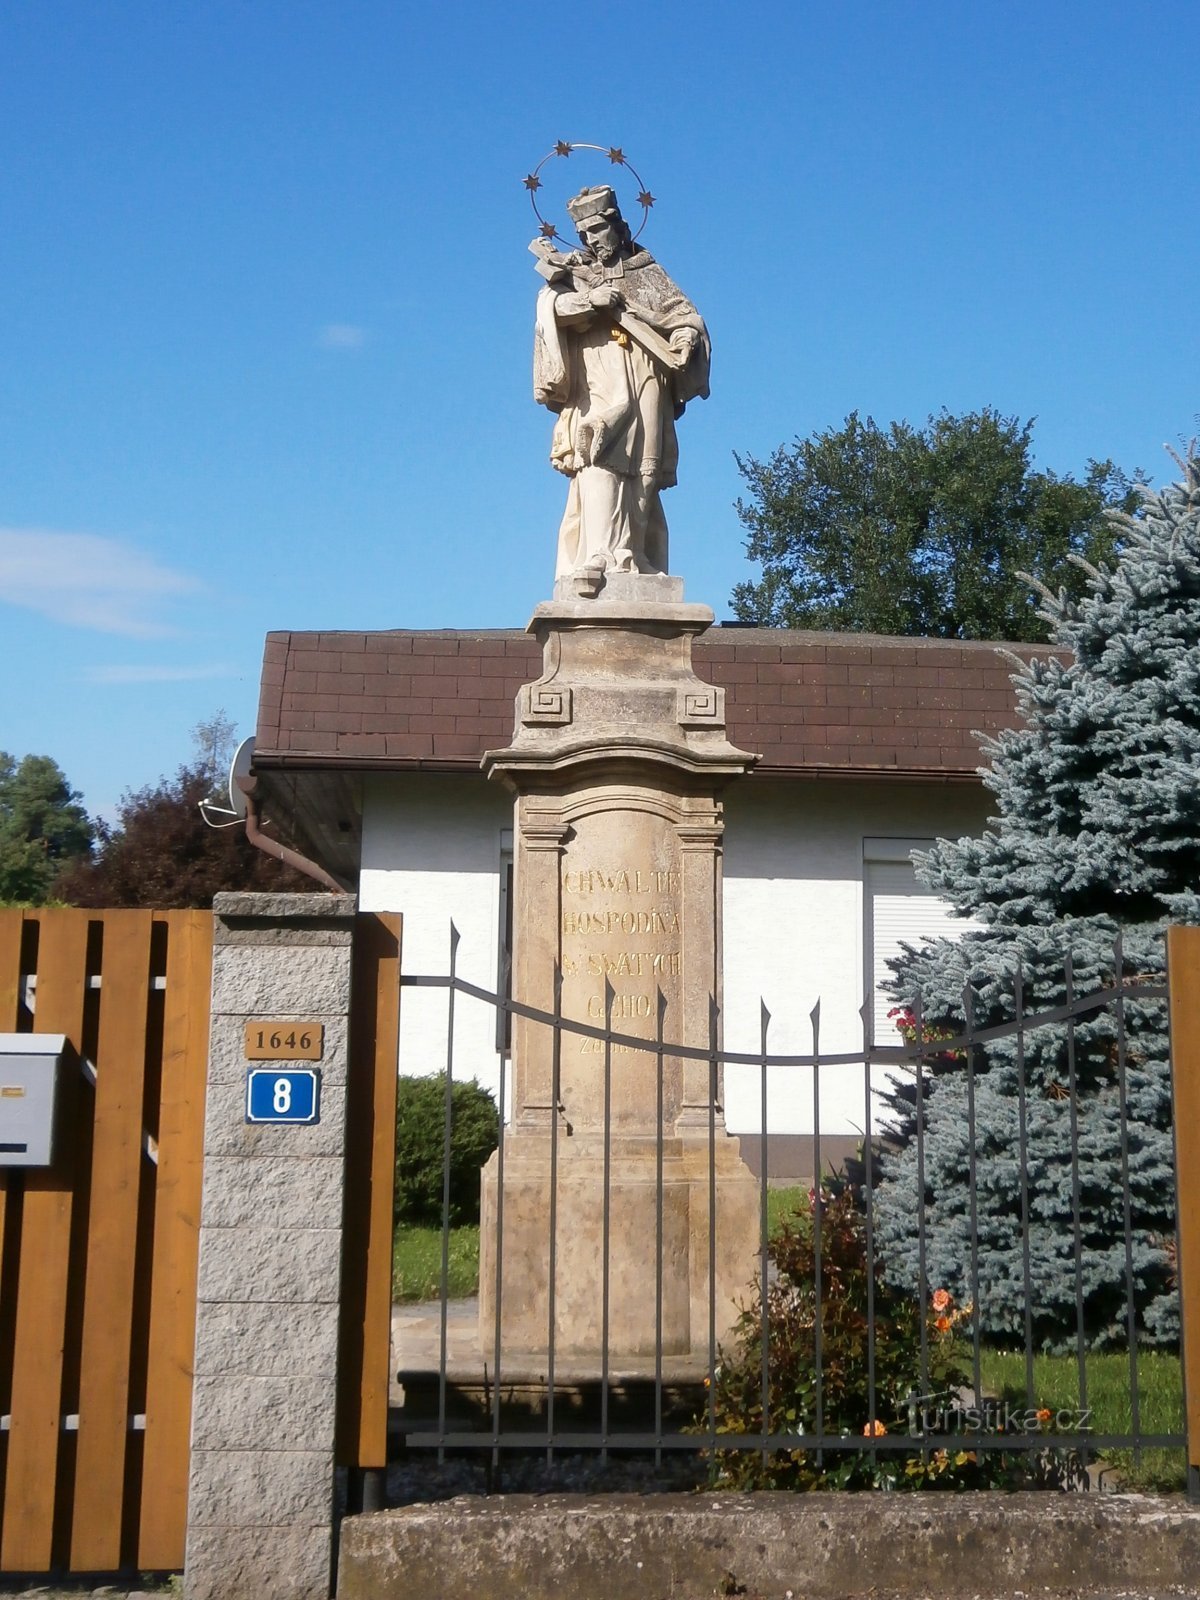 Άγαλμα του Αγ. Jan Nepomucký στην οδό Medková (Hradec Králové, 29.7.2017)